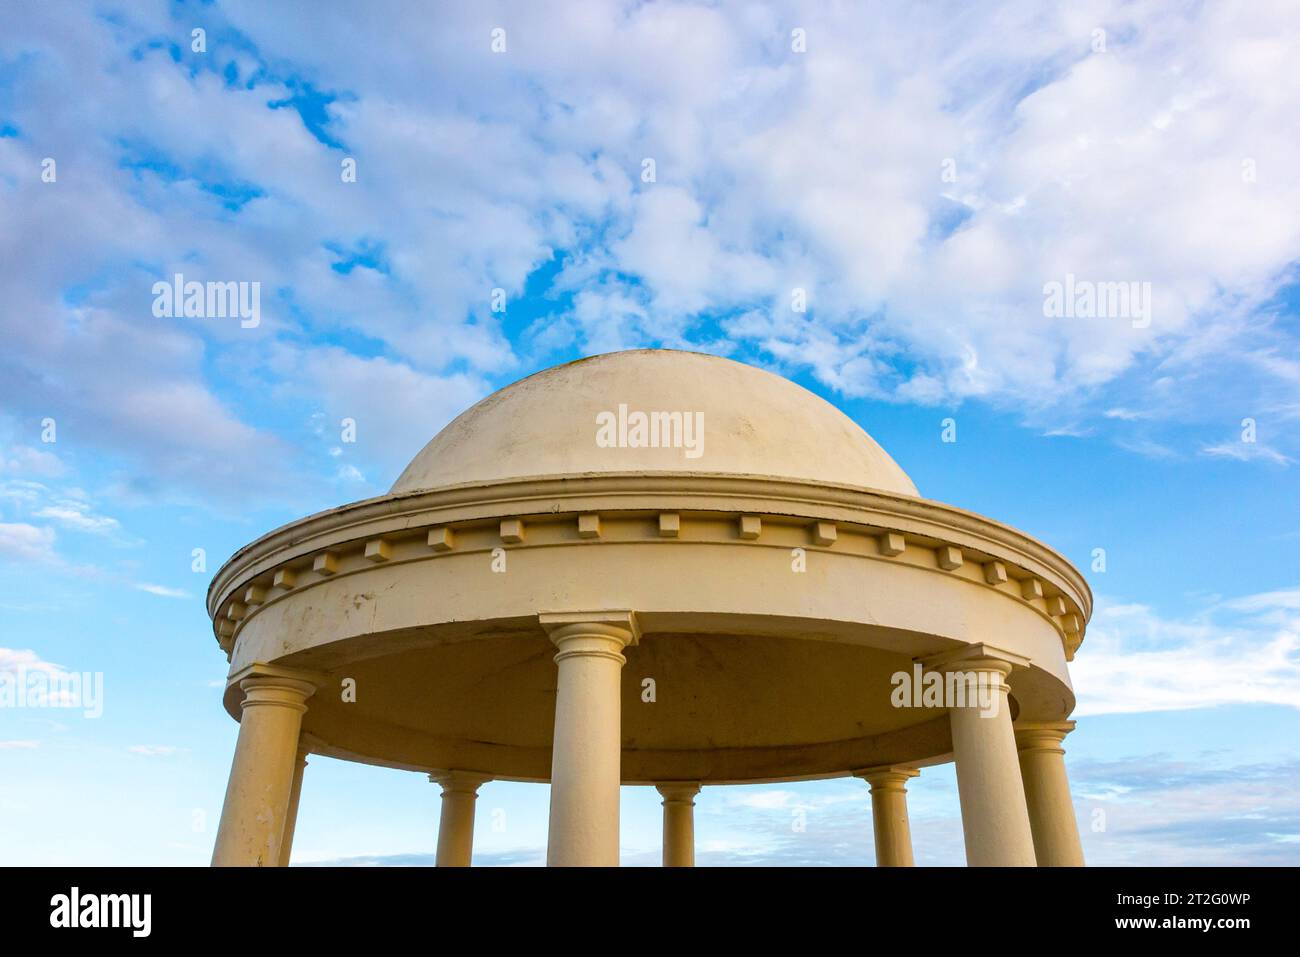 Dekorative Kuppelschutzhütte an der Strandpromenade von Bexhill on Sea, einem Küstenort in East Sussex, Südostengland Großbritannien. Stockfoto